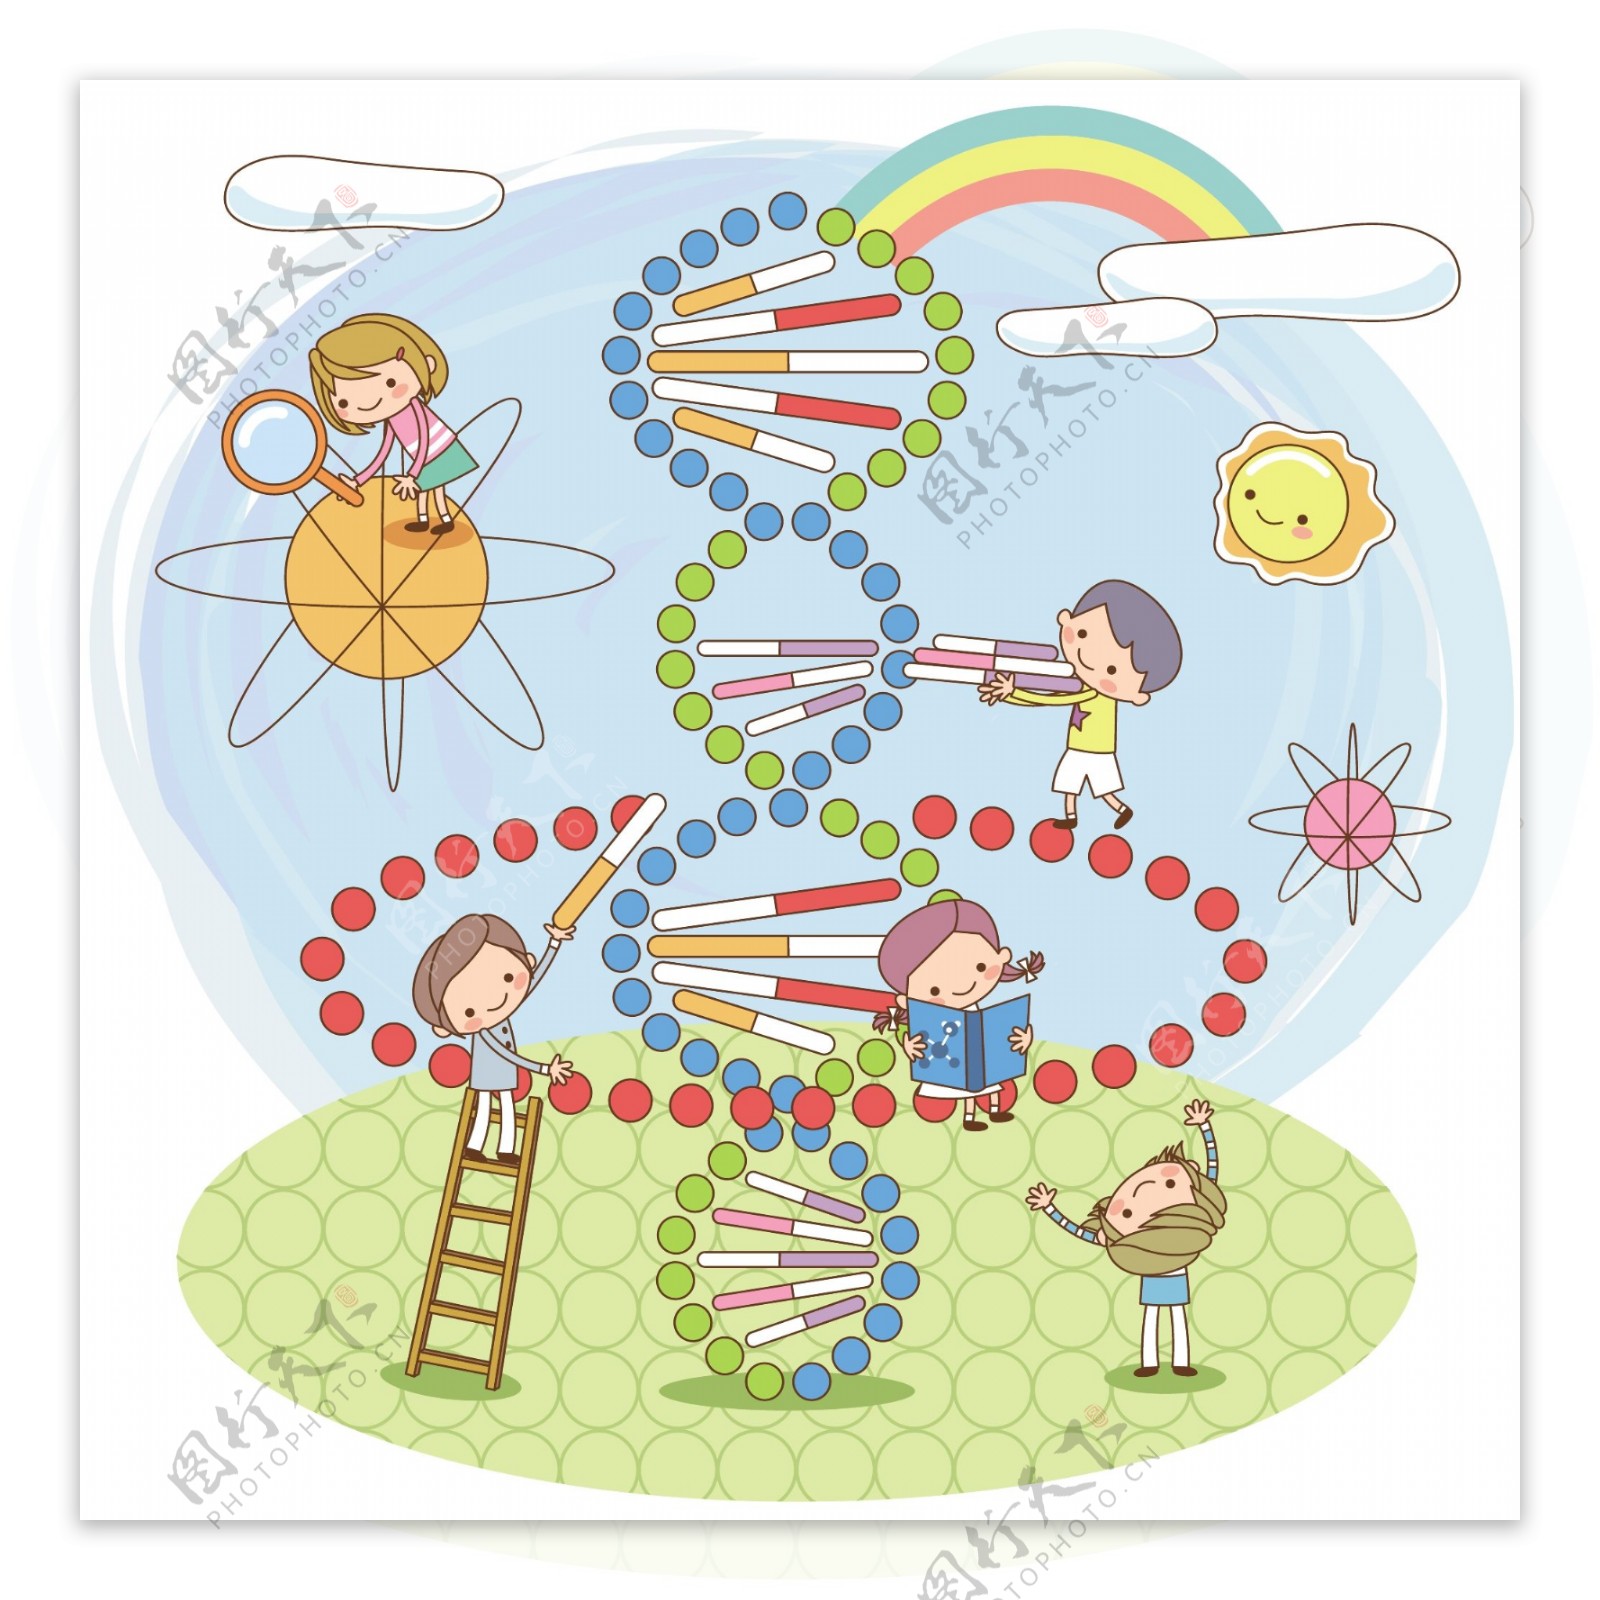 基因dna模型图片